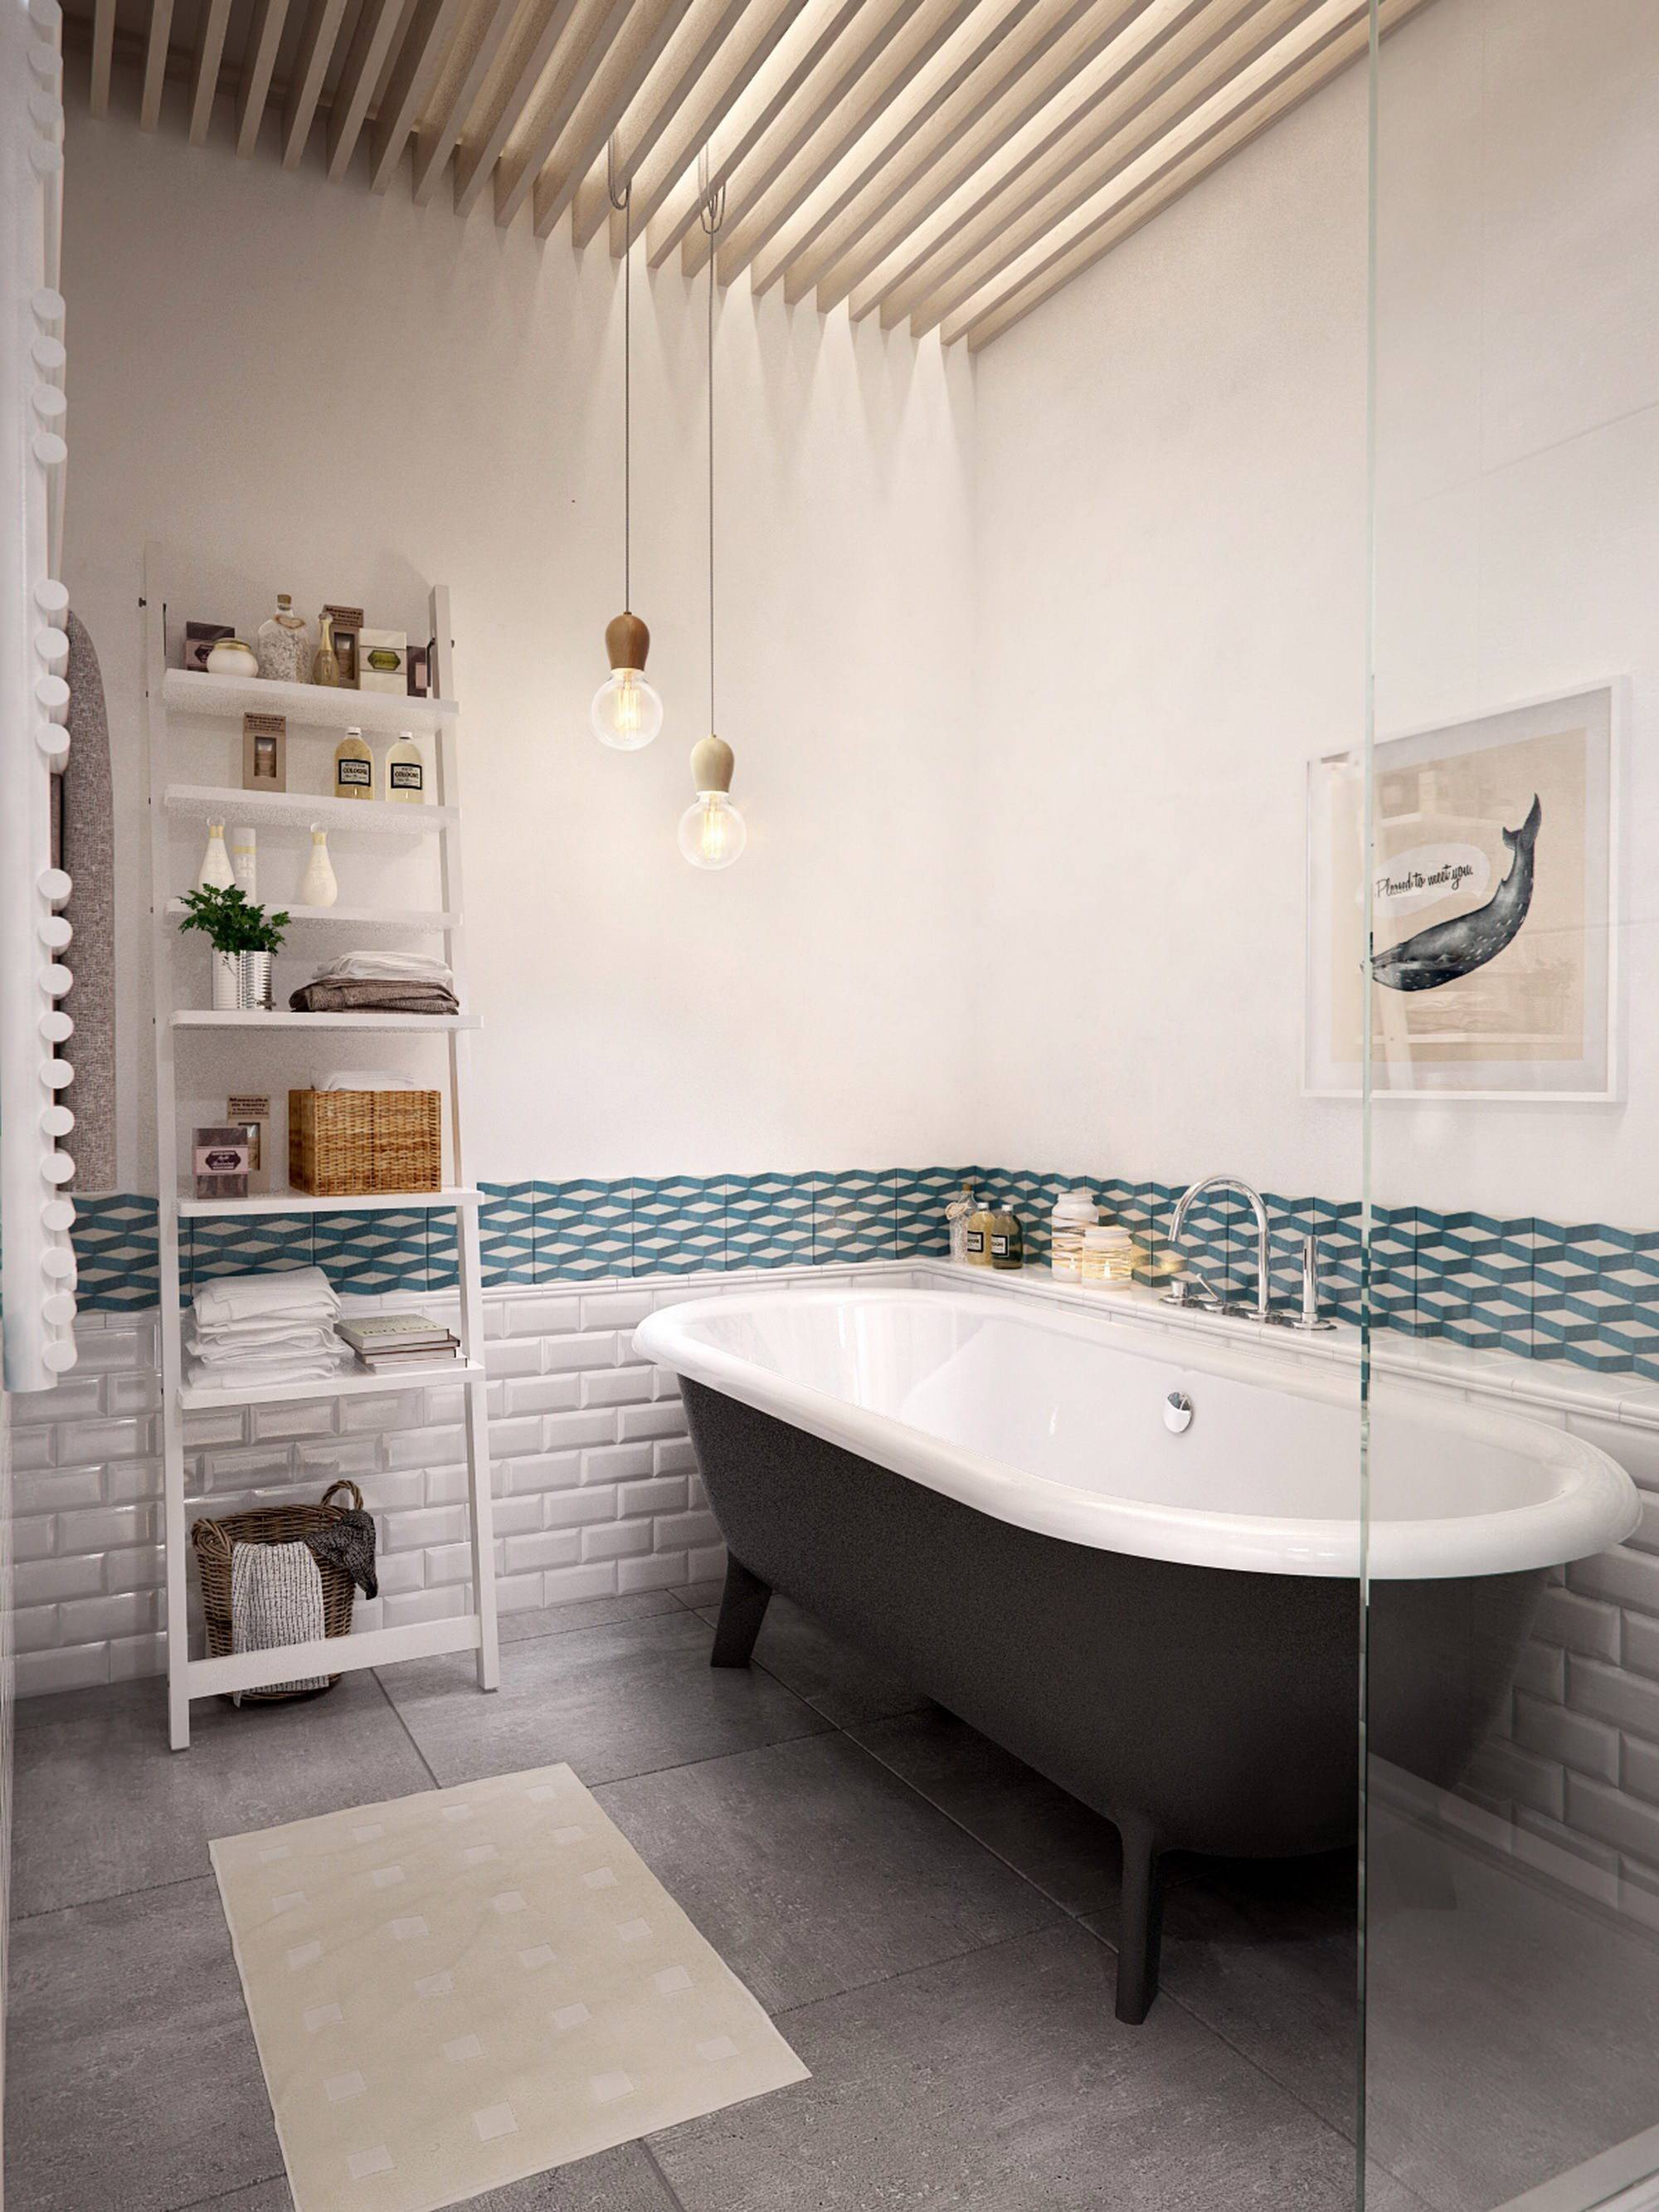 Ванные комнаты в стиле скандинавском: дизайн интерьера, идеи ремонта и отделки фото дизайна интерьеров ванной в скандинавском